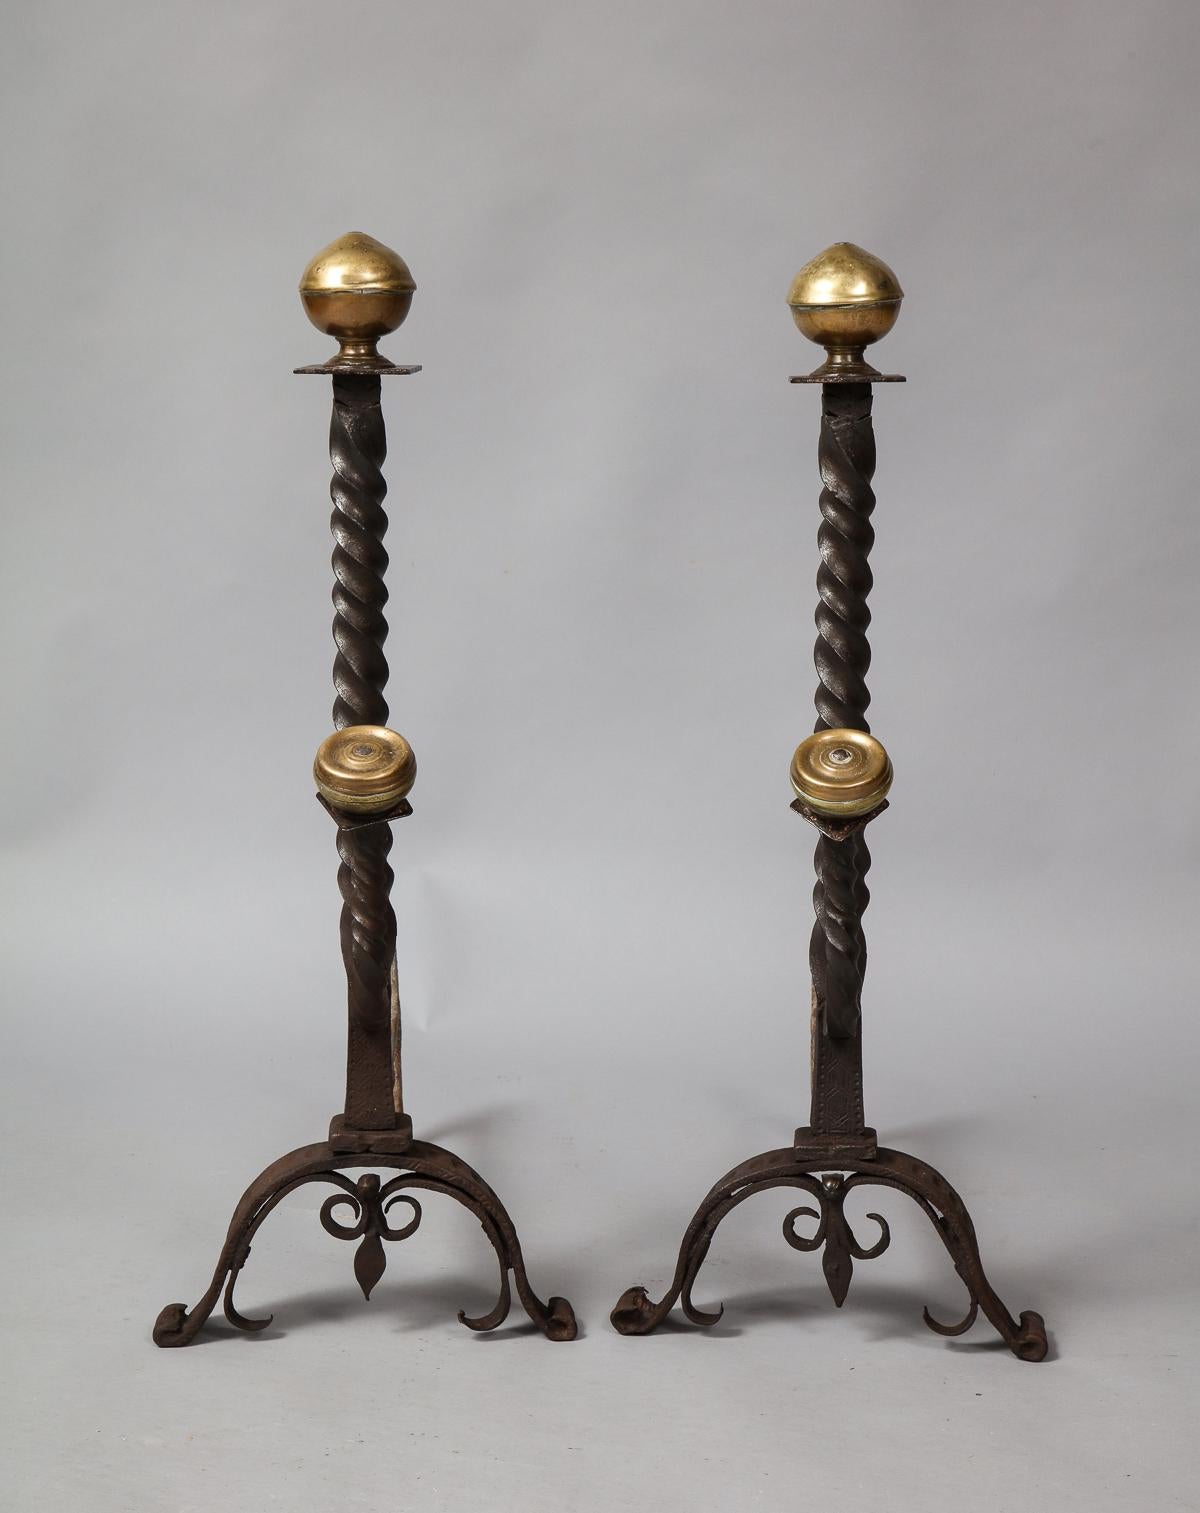 Belle paire de chenets en bronze et en fer forgé du XVIIe siècle, avec des fleurons annelés en forme de boule supprimée sur des cols carrés au-dessus de tiges torsadées en spirale, avec des supports en forme de fuseau tournés vers l'avant avec des